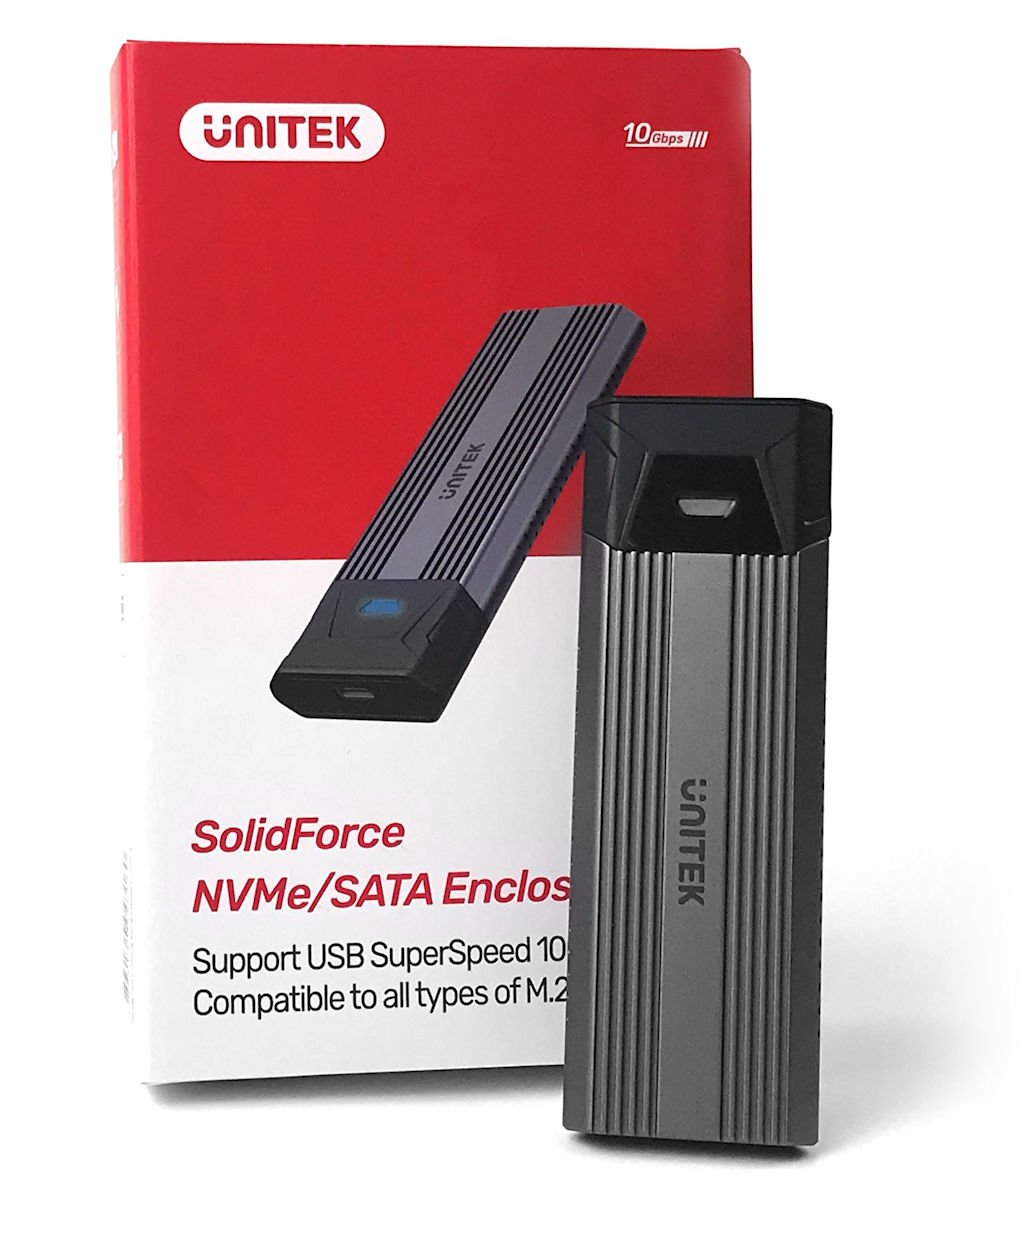 10Gbps 速度、铝金属散热 UNITEK SolidForce S1204B 外置 SSD 盒